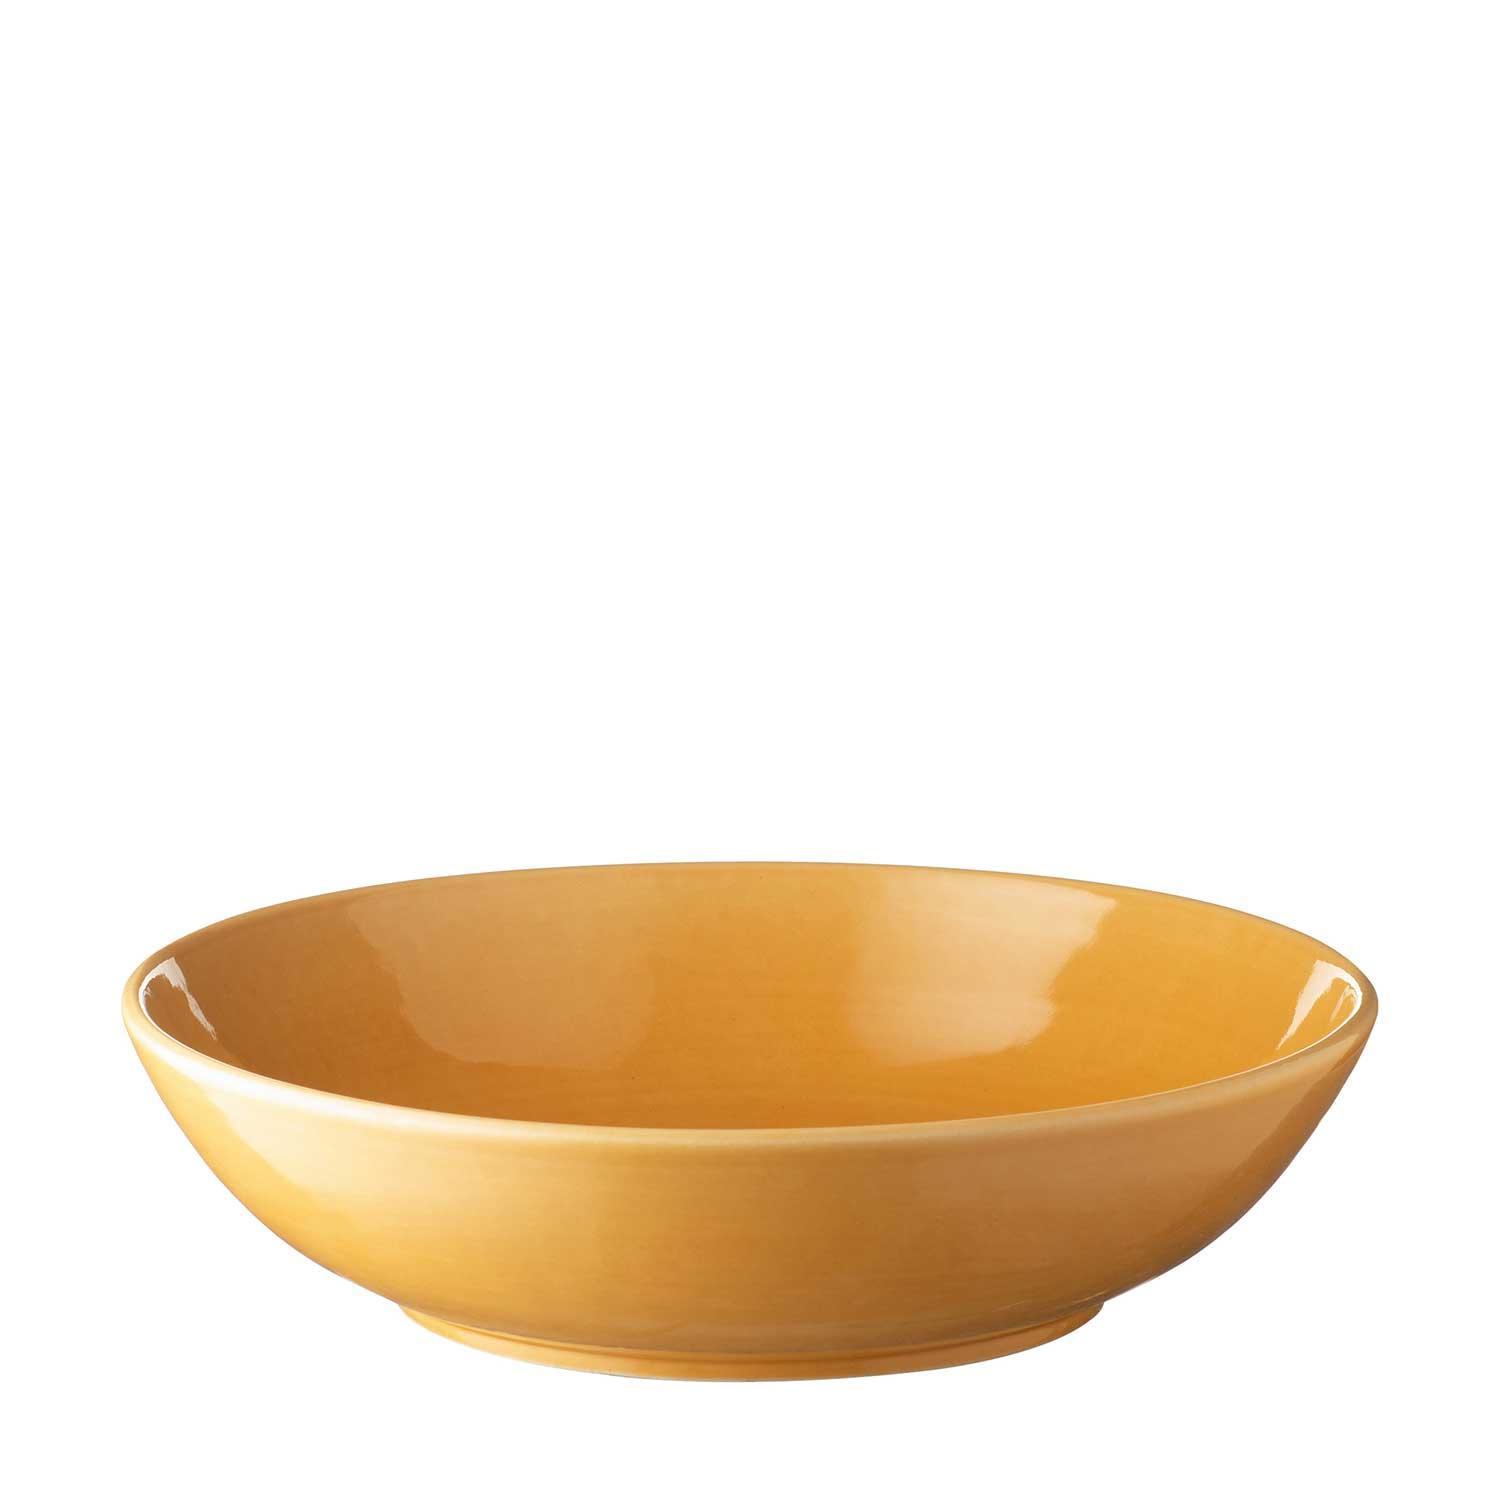 classic round pasta bowl